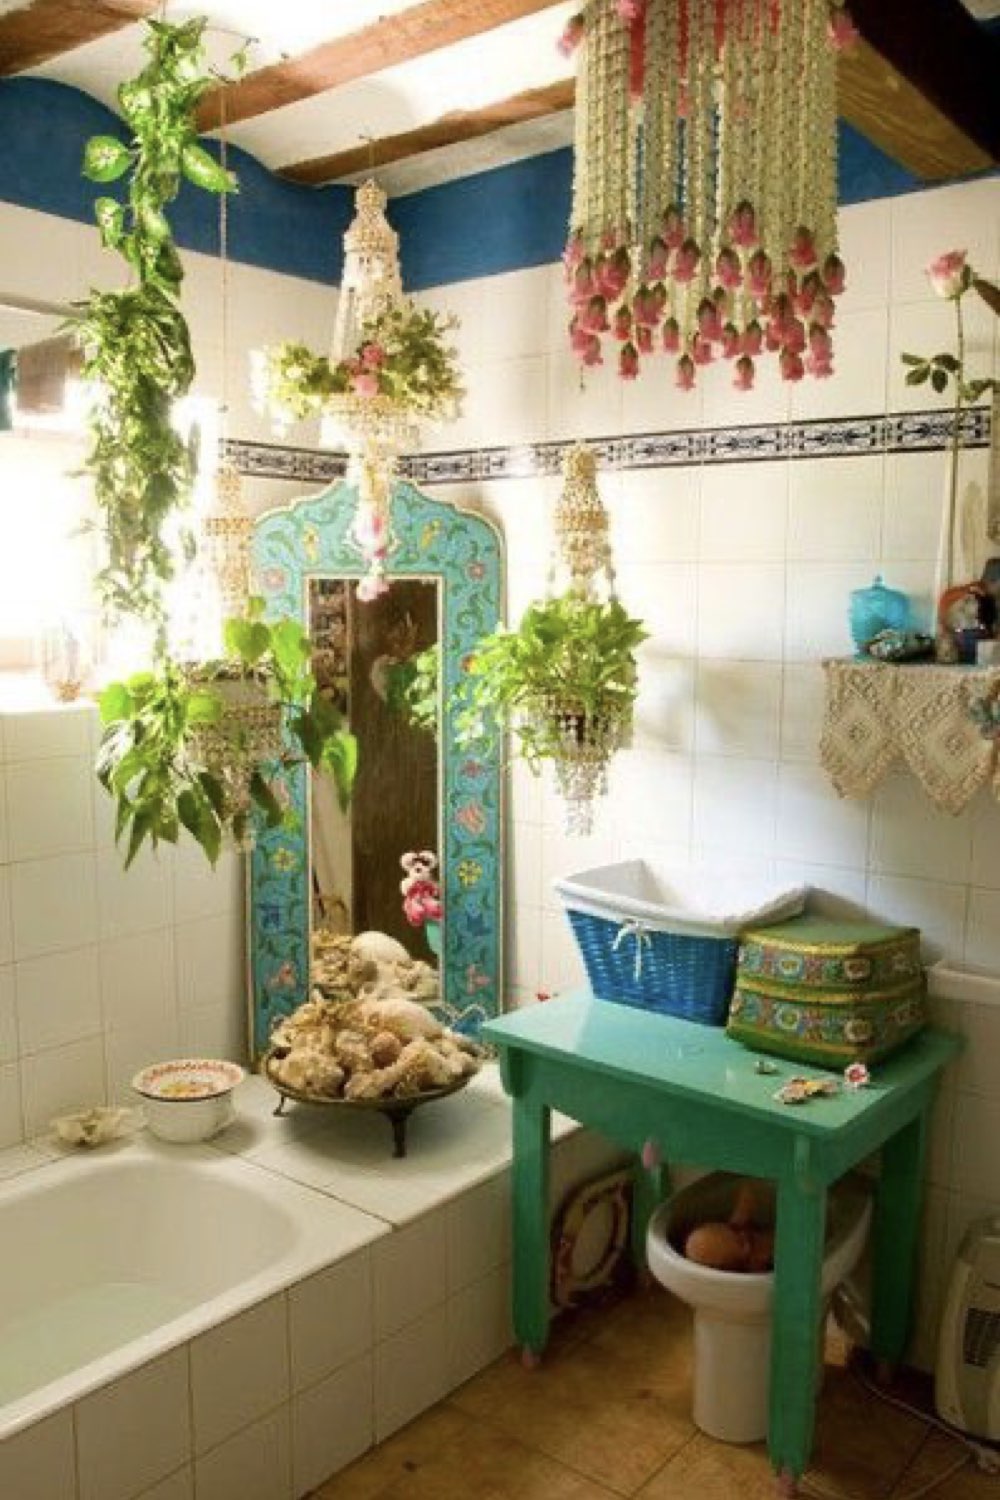 salle de bain decoration reussie exemple ambiance bohème chic boho plantes couleur macramé original sympa